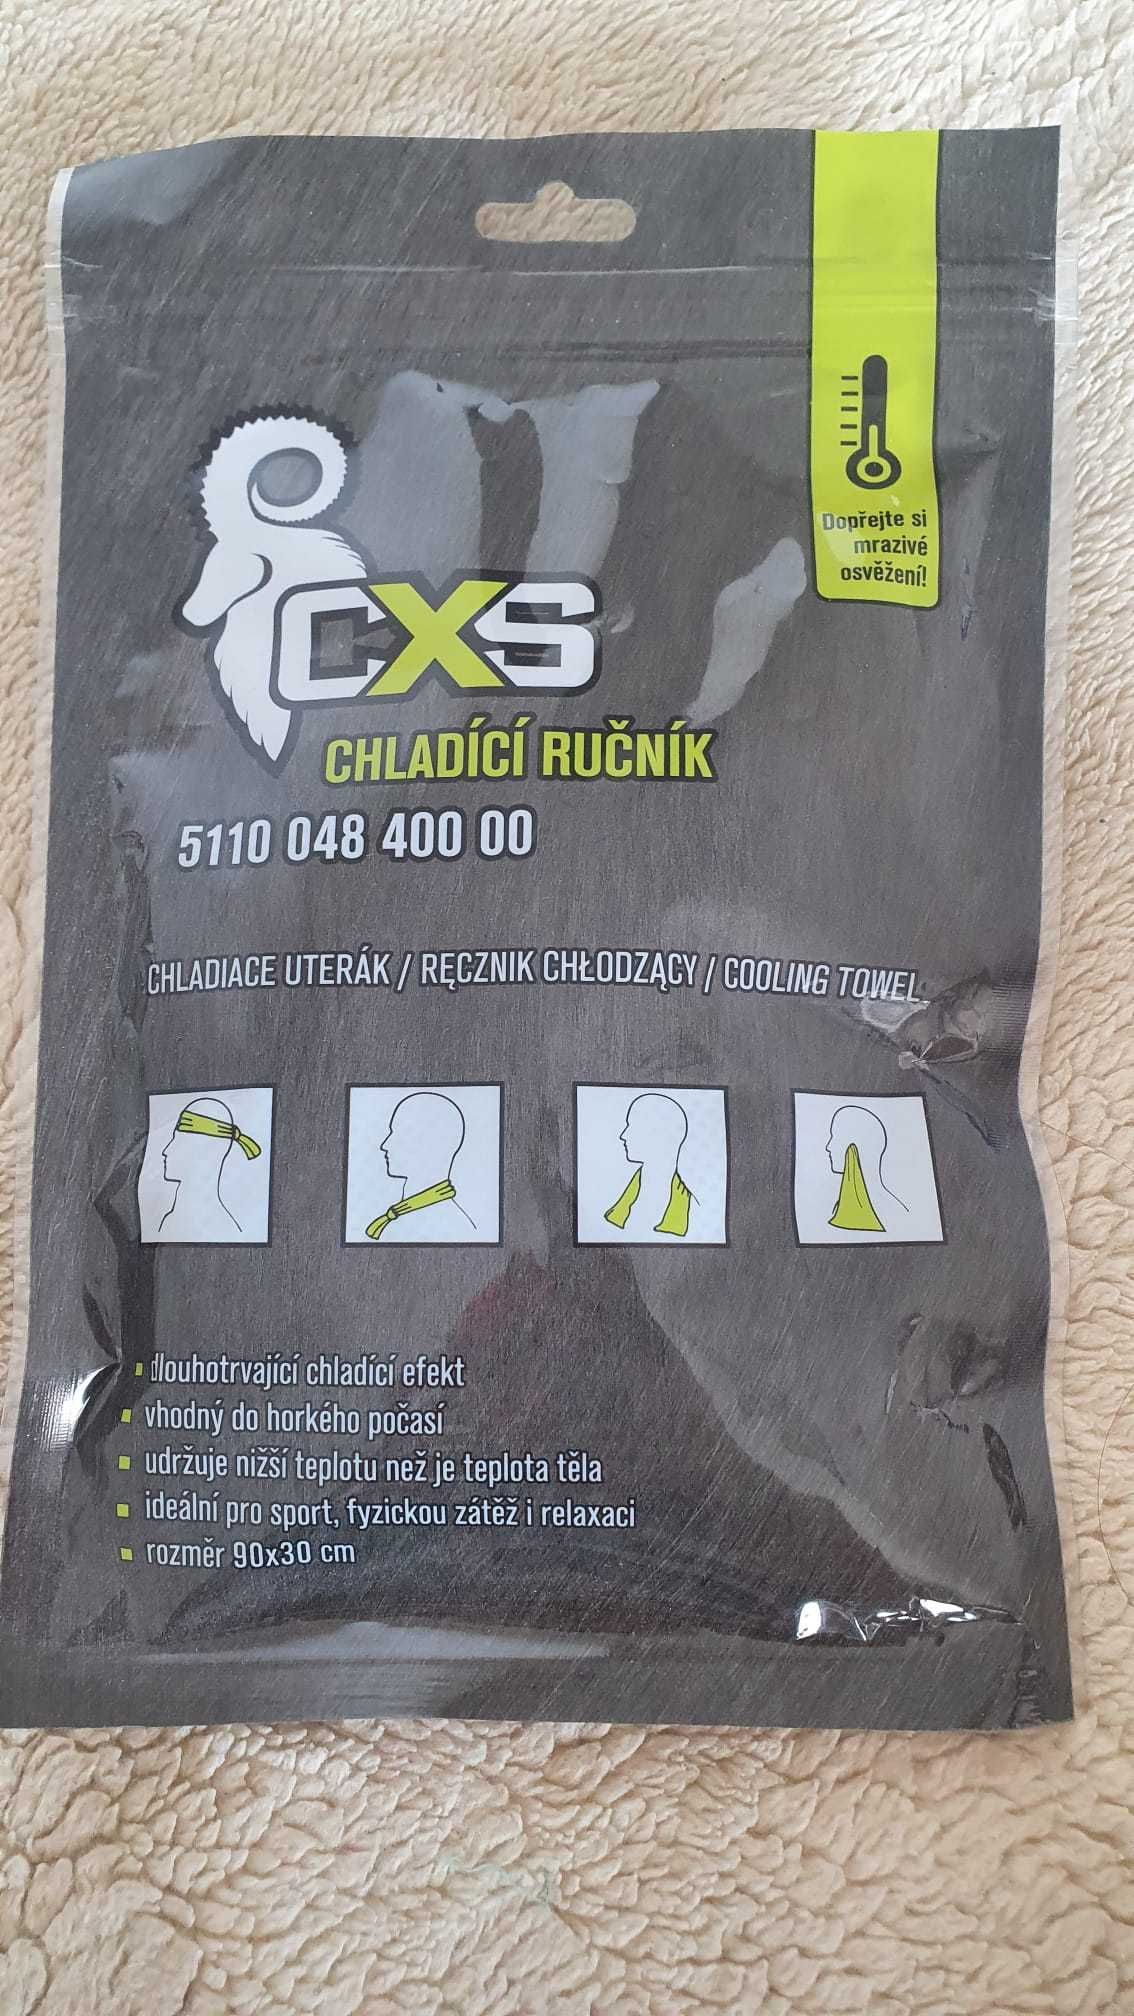 Ręcznik chłodzący CXS - Rozmiar: 90 x 30 cm